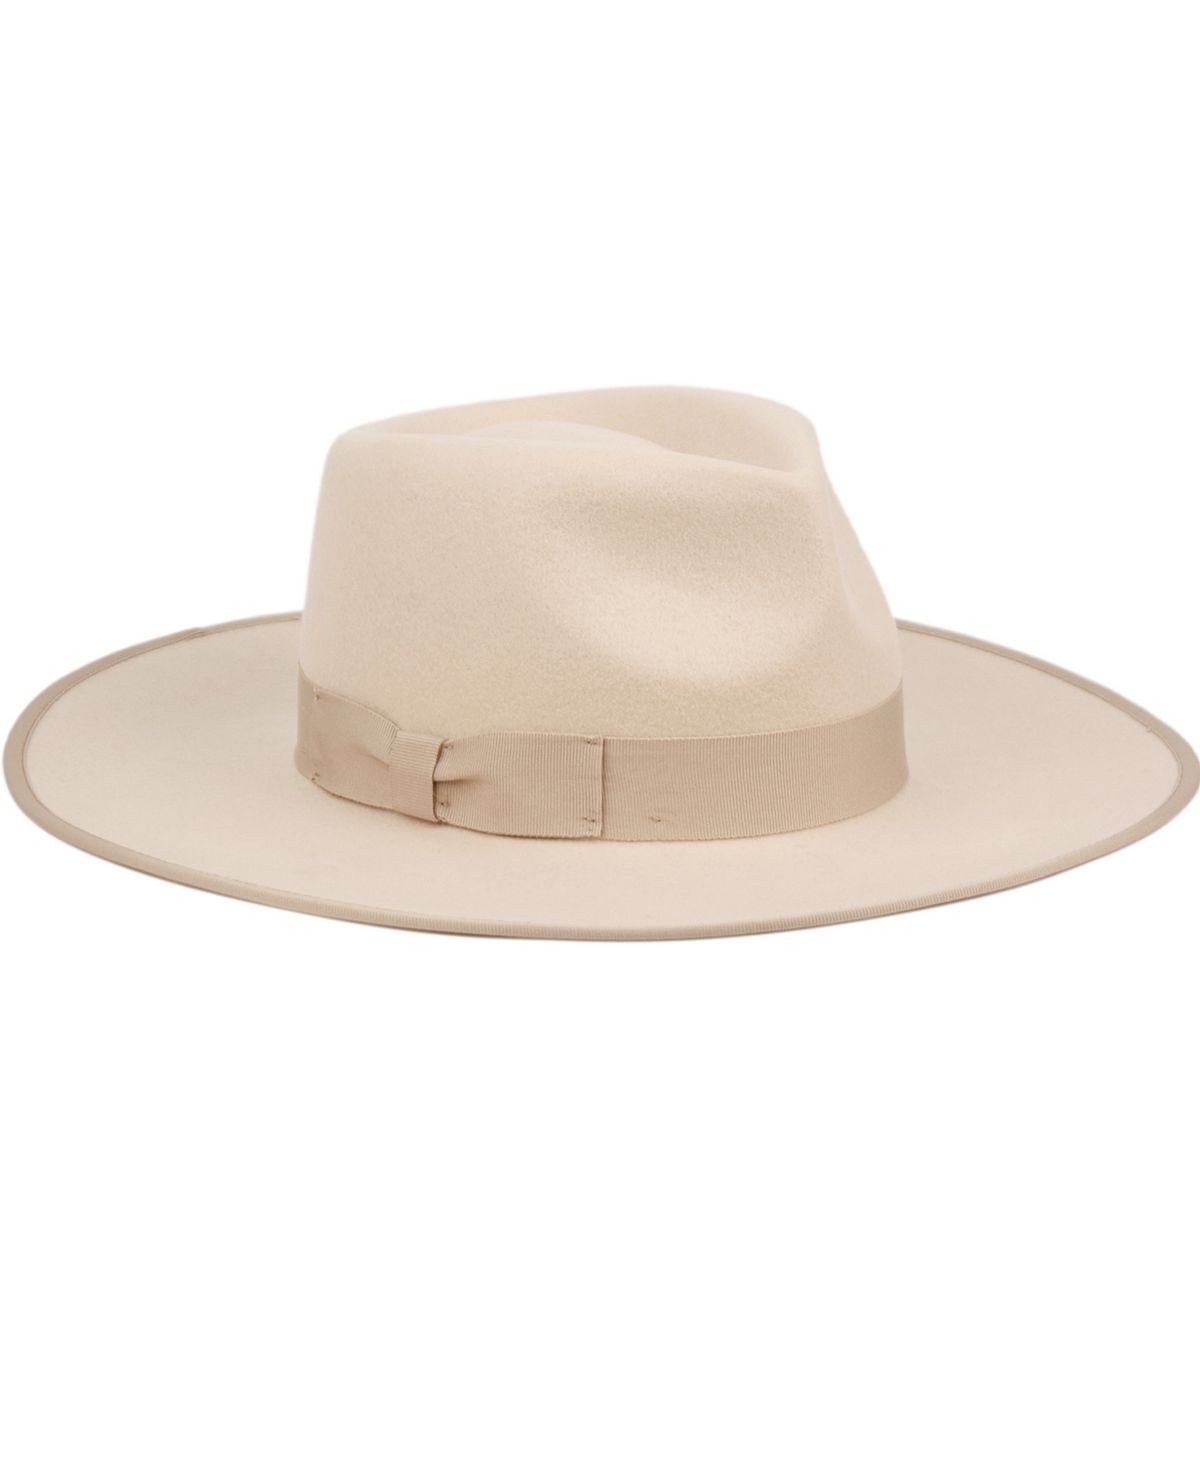 Женская фетровая шляпа Rancher Fedora с широкими полями Angela & William цена и фото